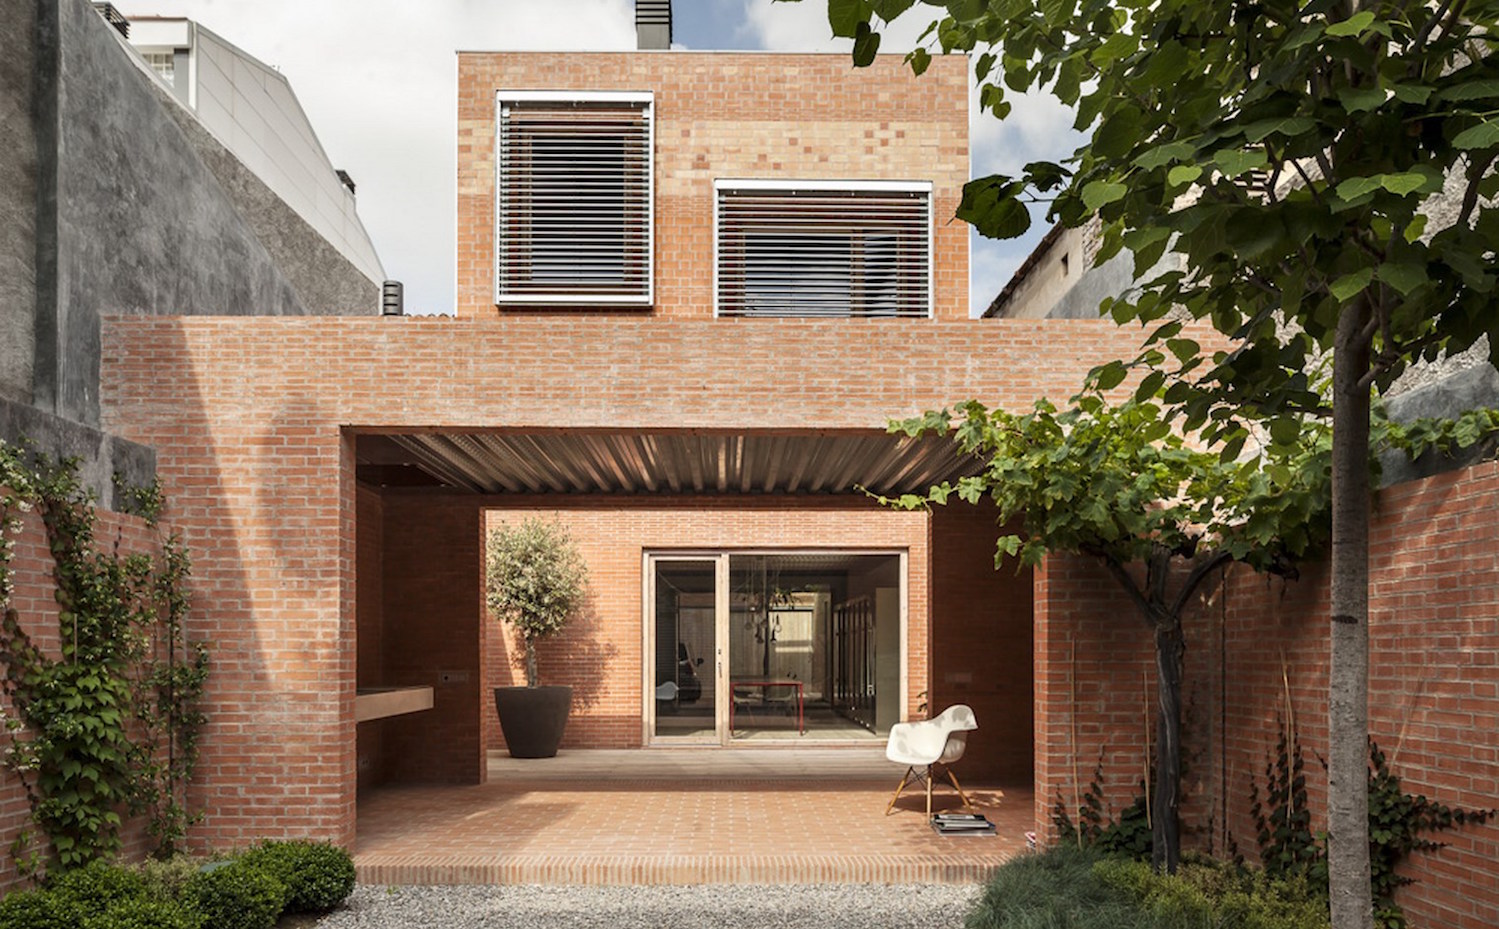 Casa 1014, de H Arquitectes. XIII Bienal Española de Arquitectura y Urbanismo